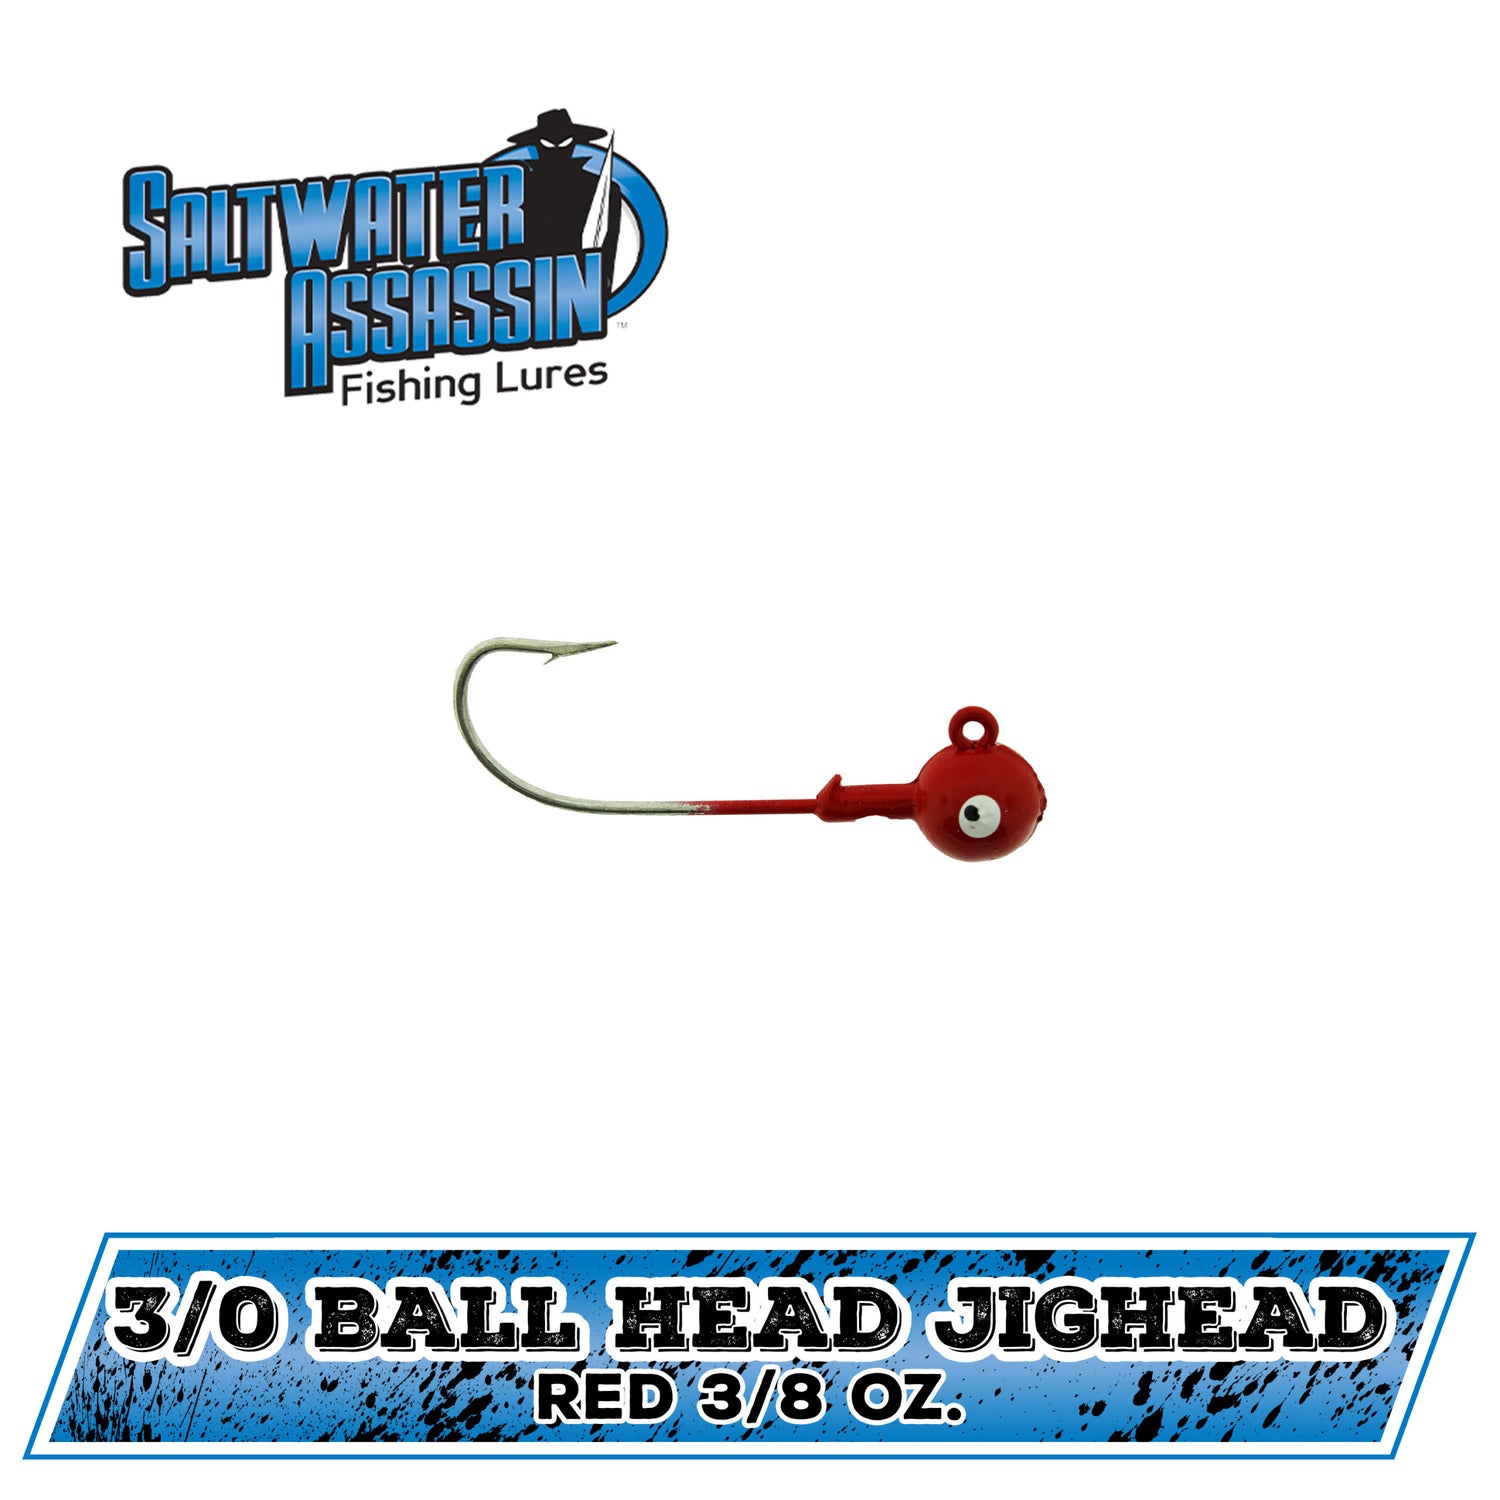 Ball Head Jigheads